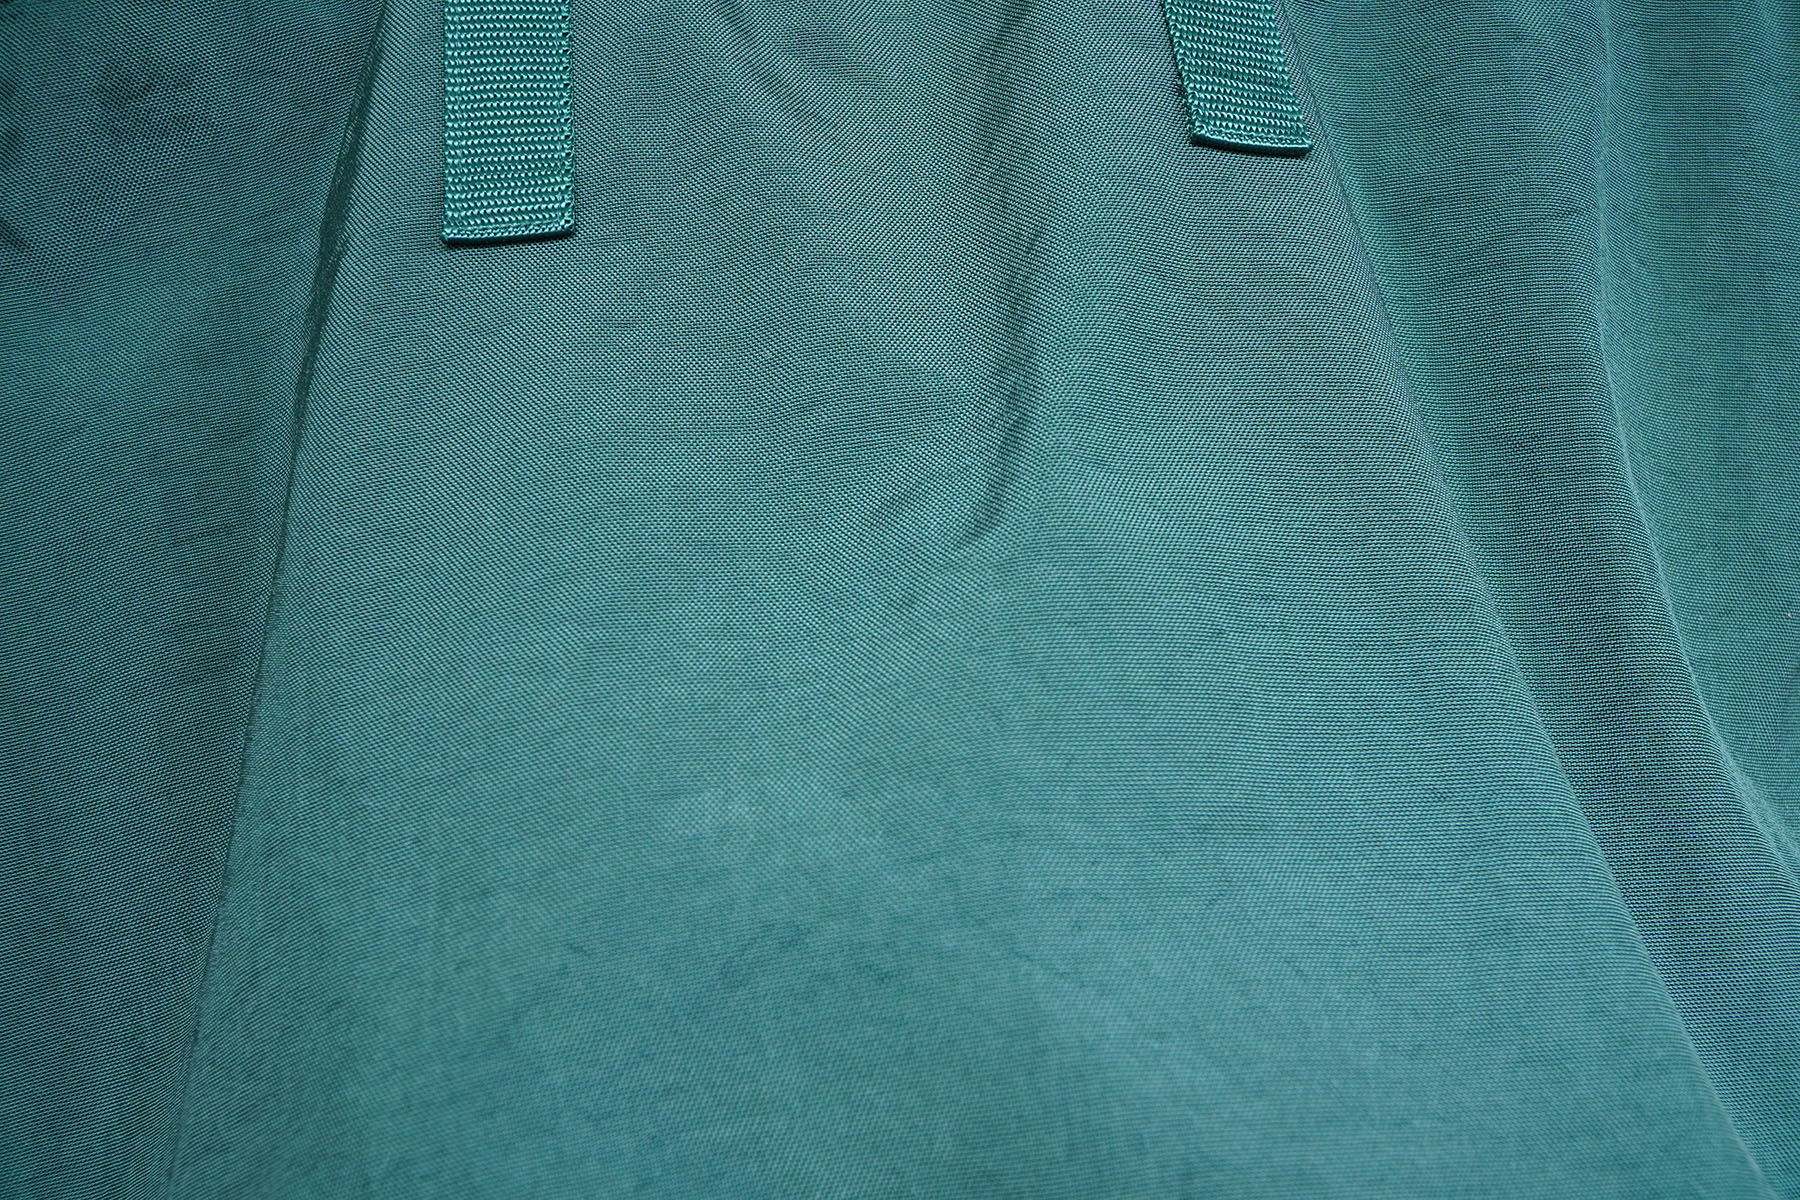 ERA TAS HELMET BAG NEW color GREEN fabric